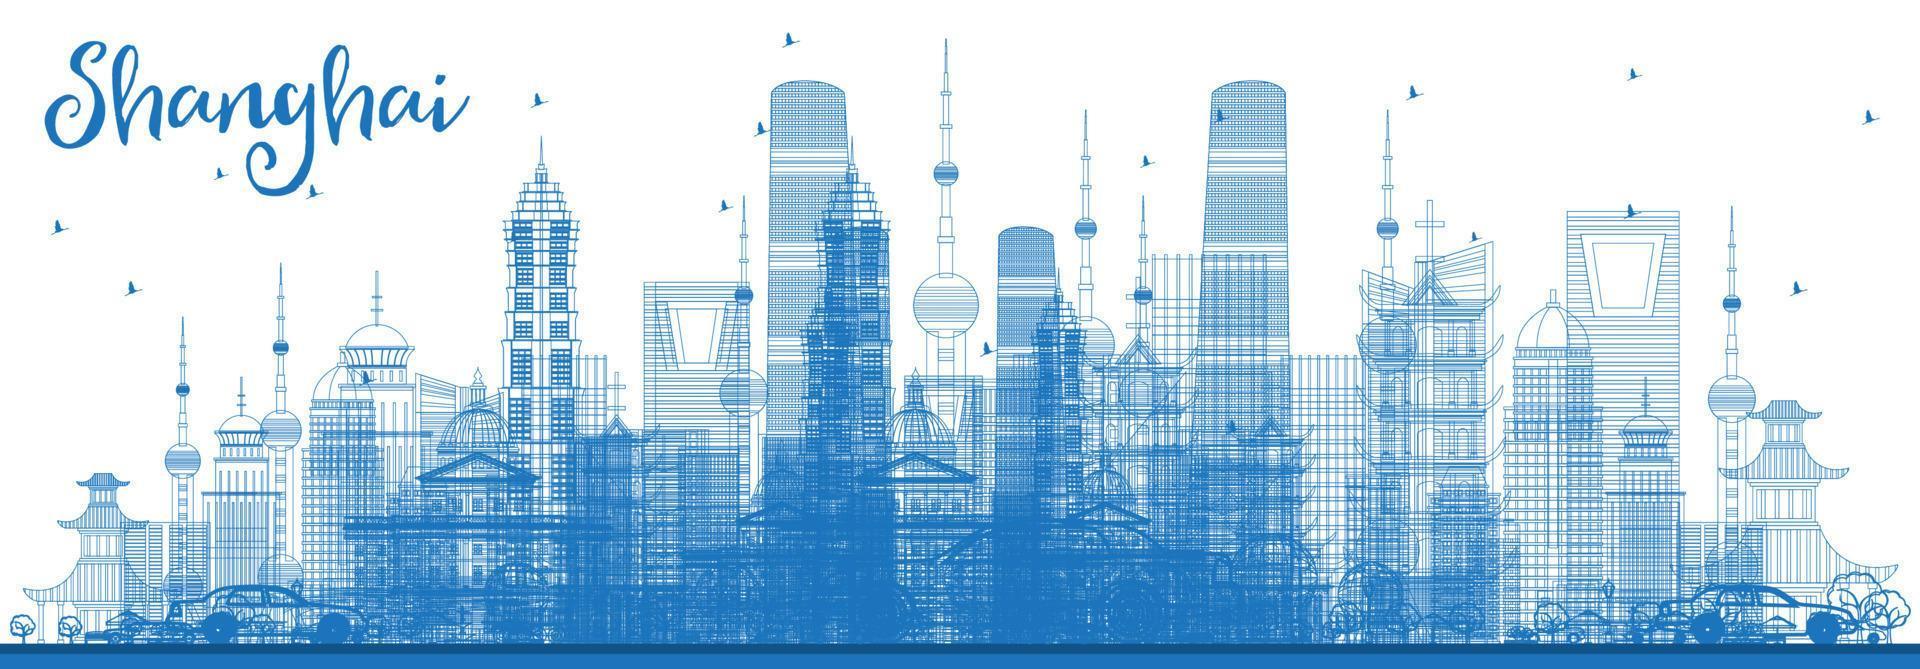 contour des toits de shanghai avec des bâtiments bleus. vecteur